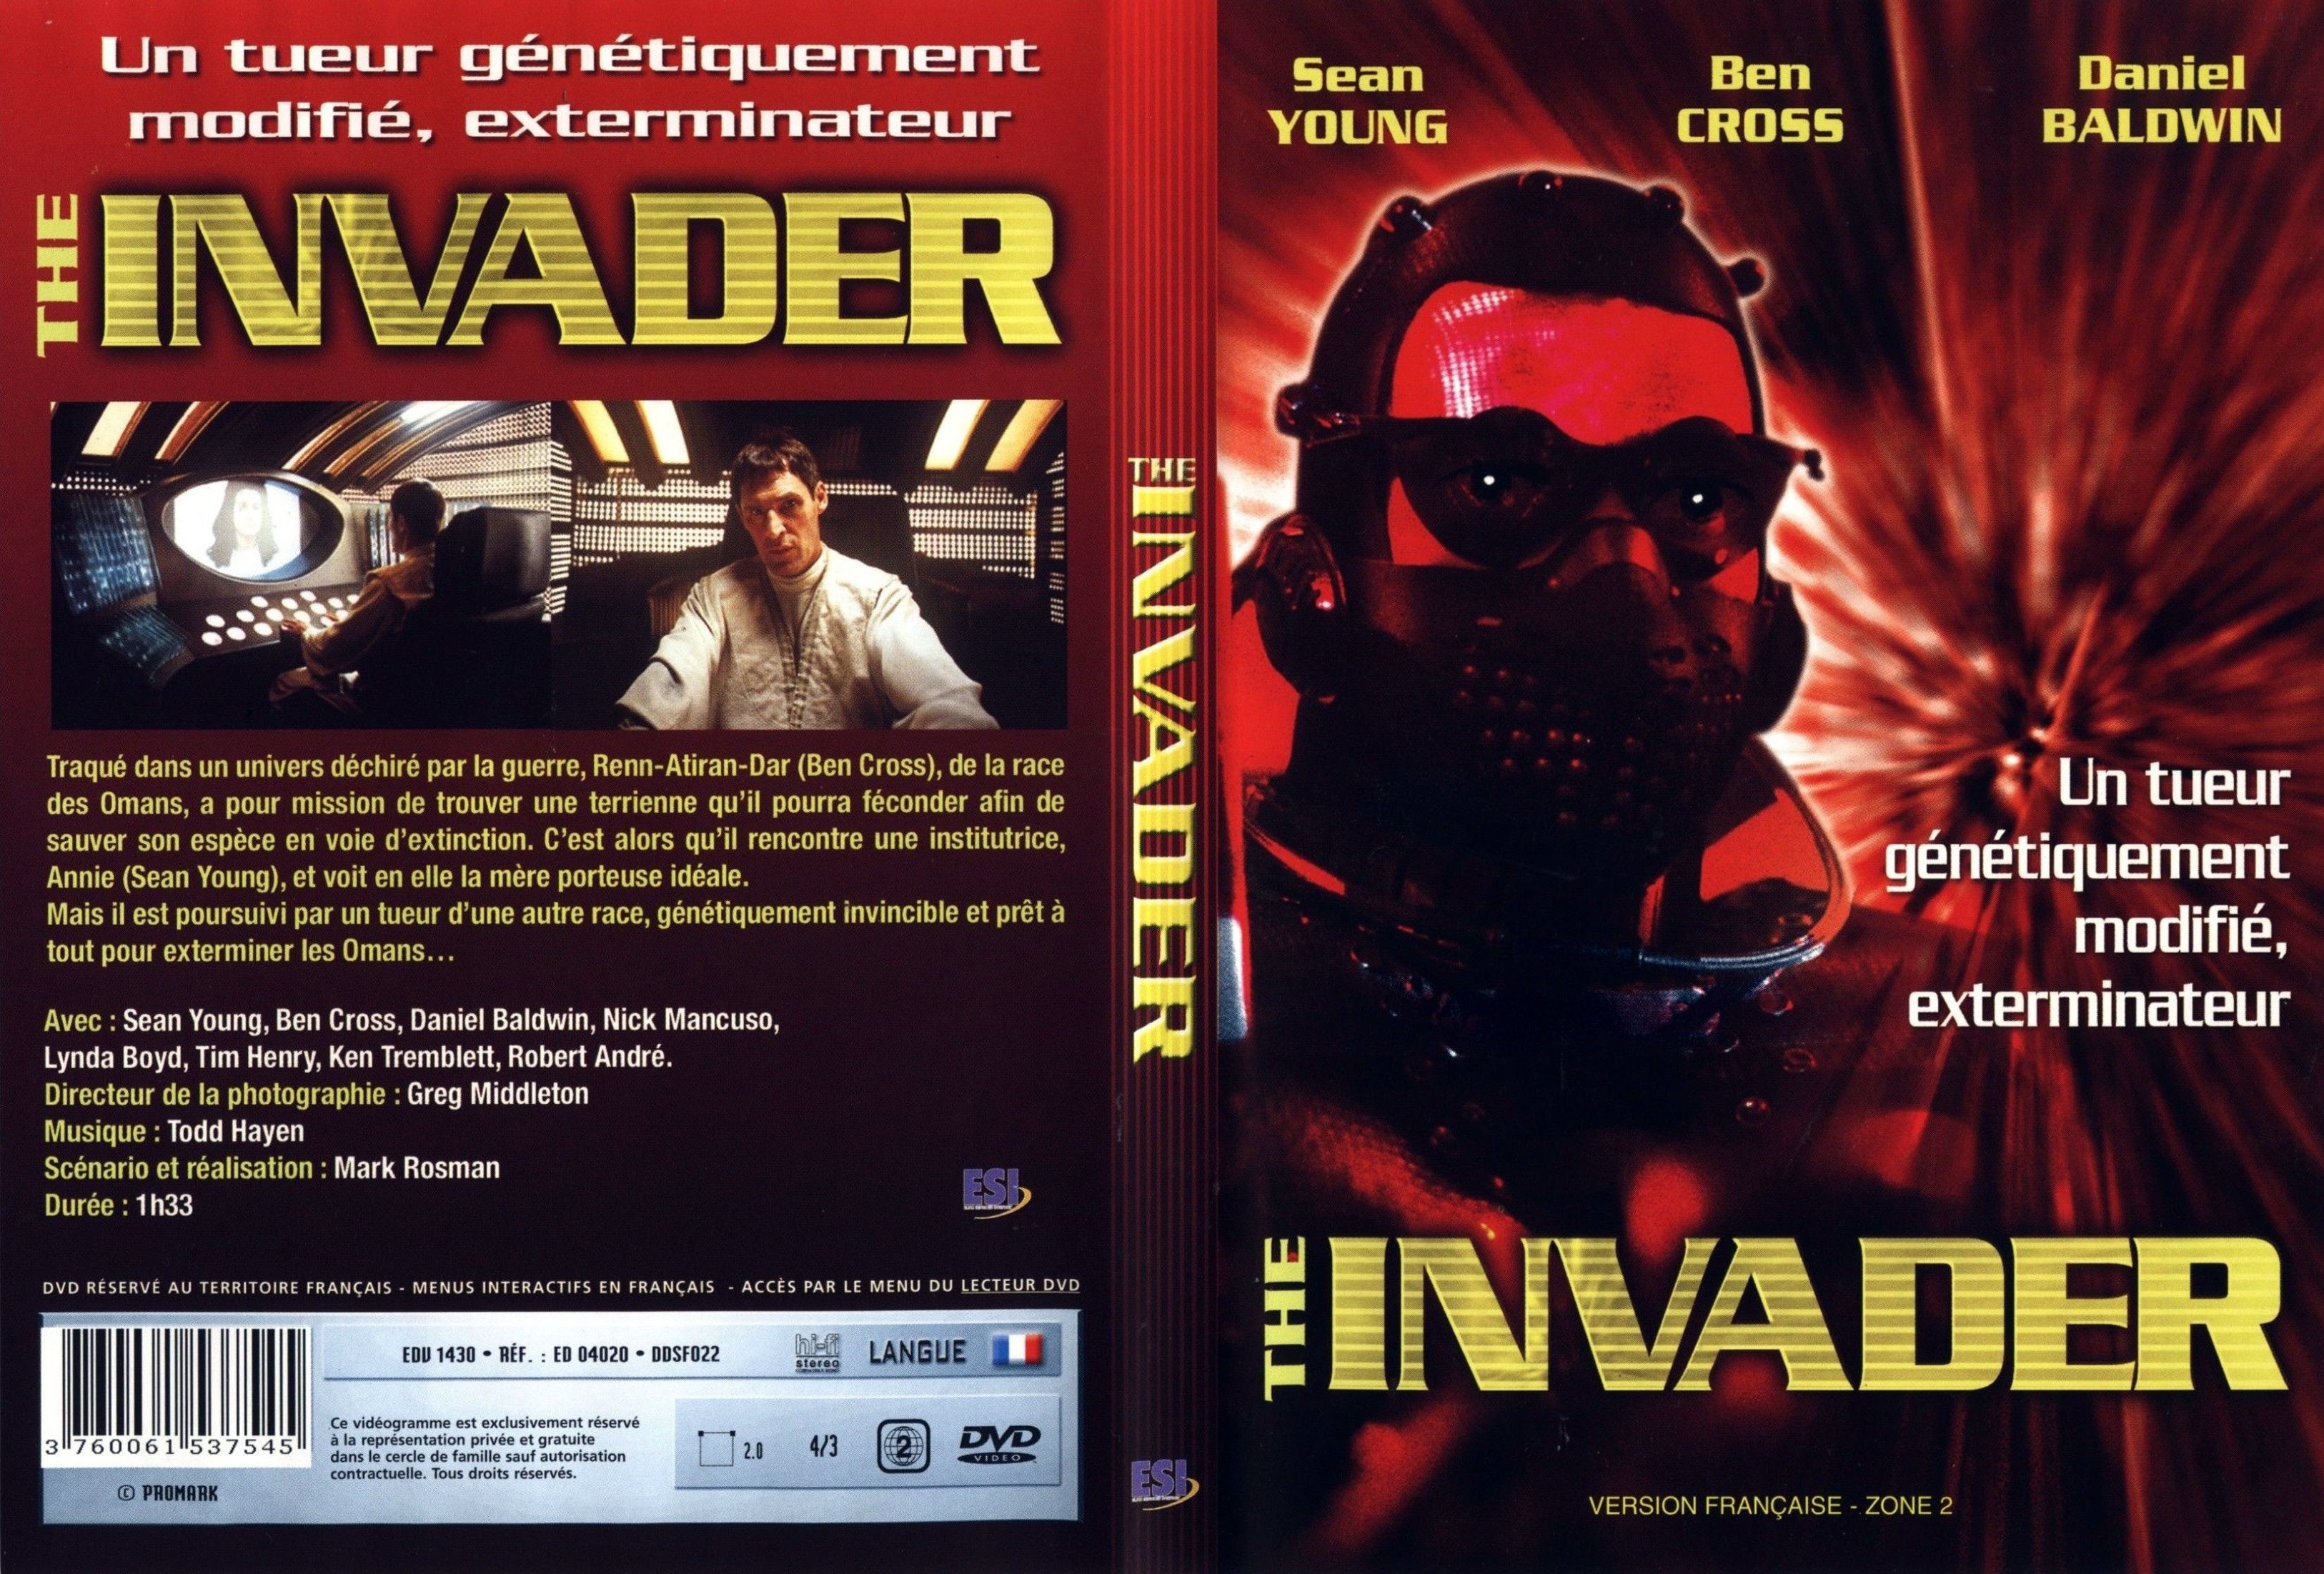 Jaquette DVD The invader v2